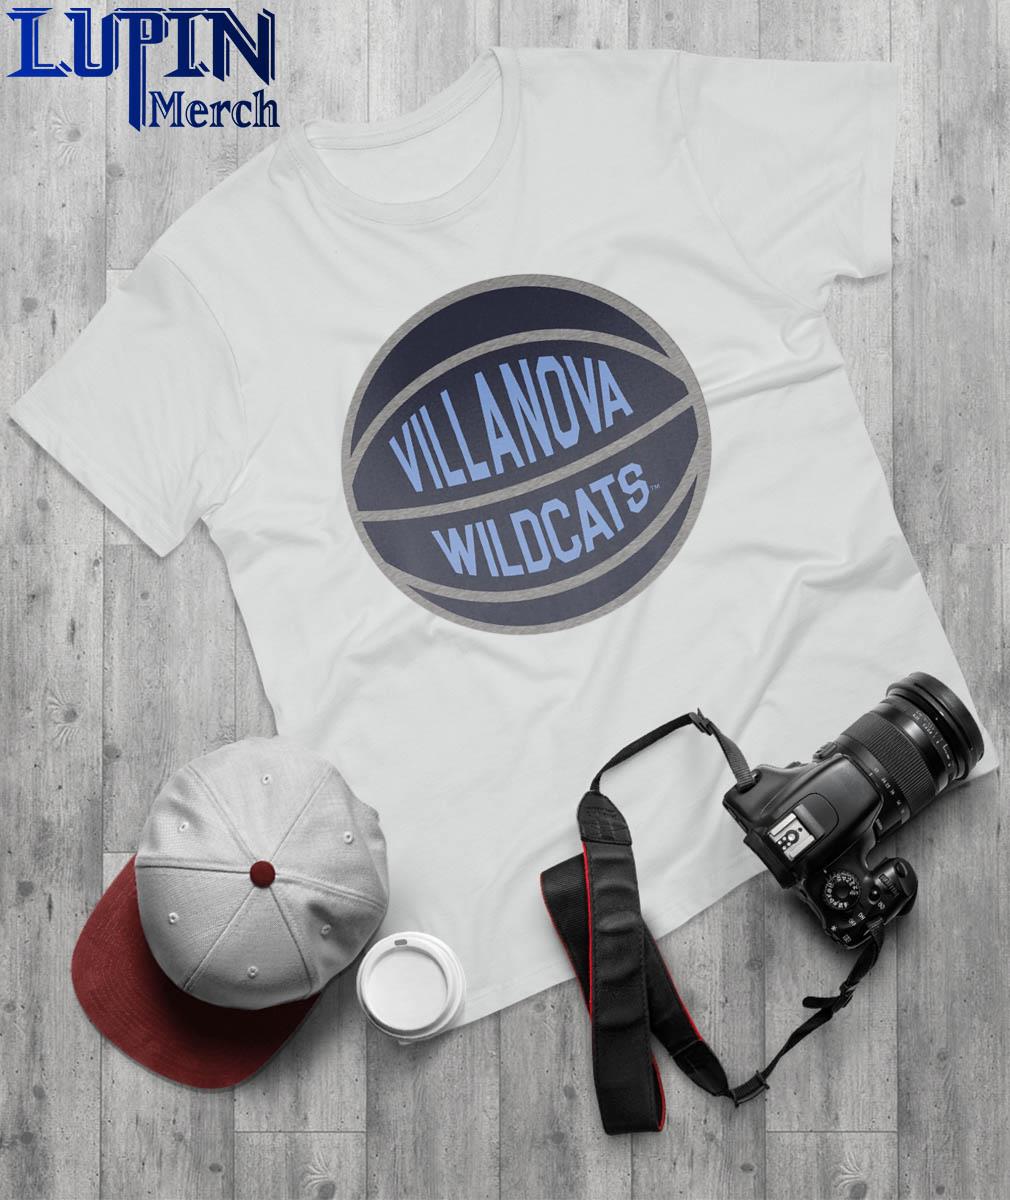 Official Villanova Wildcats Fast Break T-Shirt